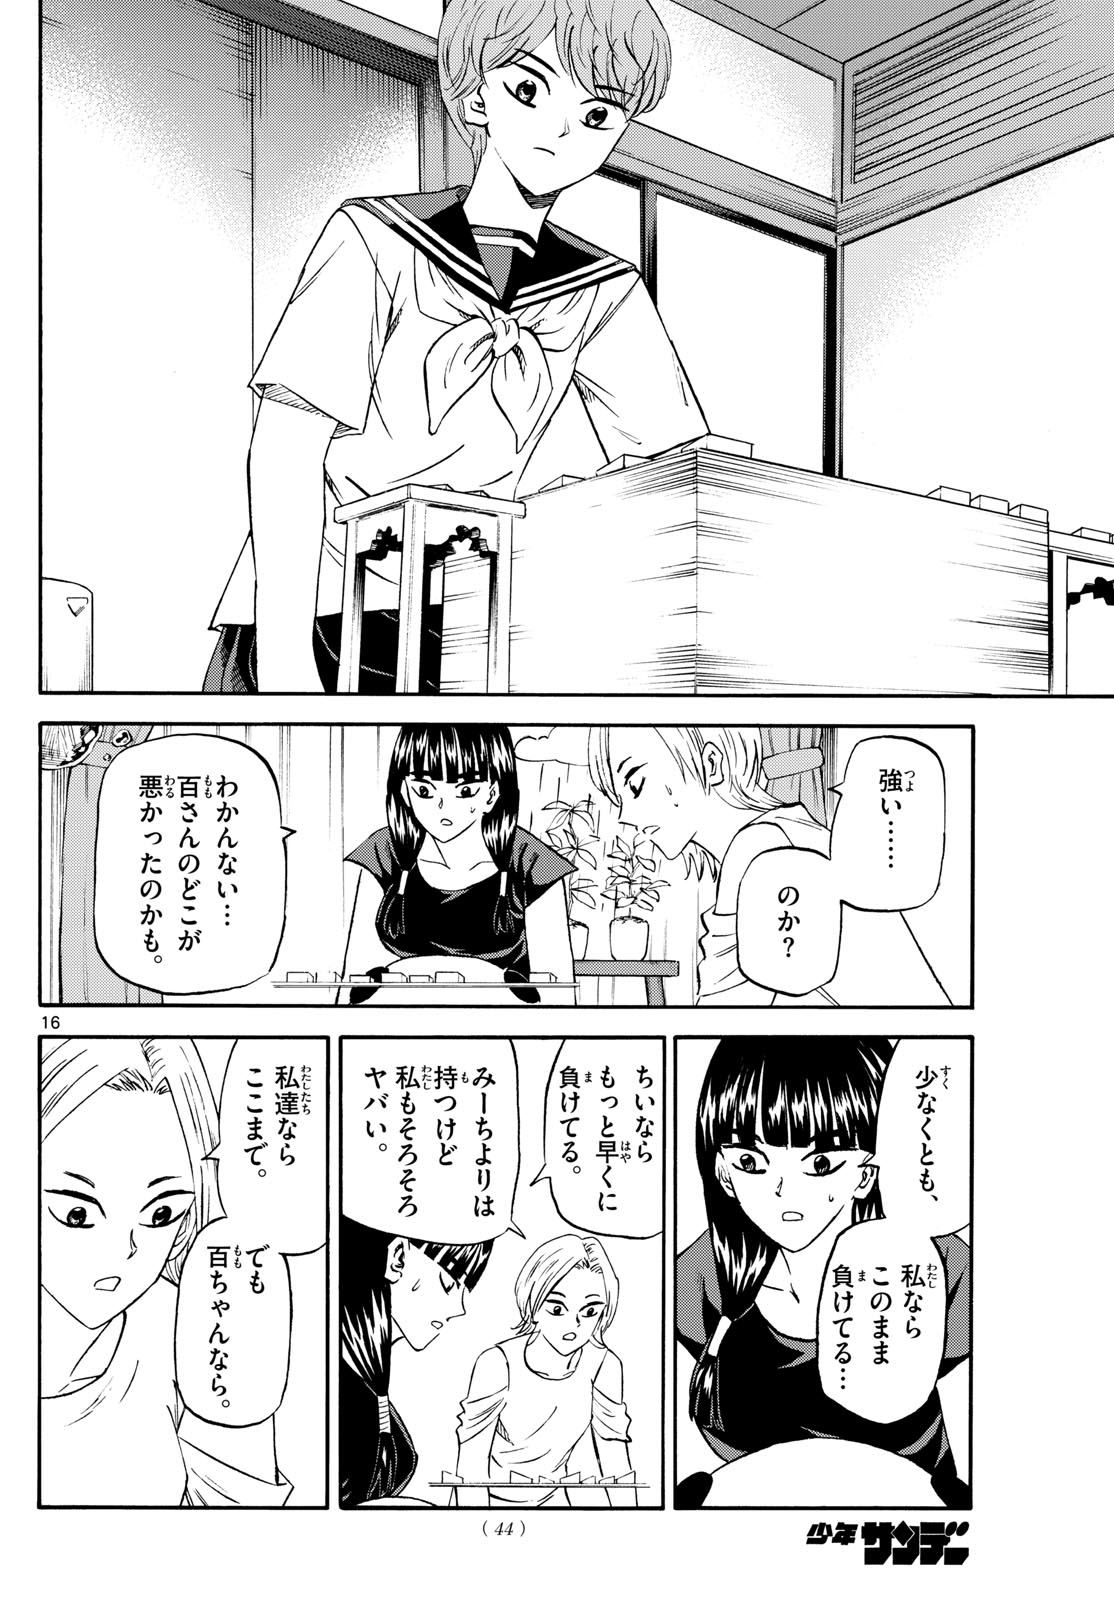 Tatsu to Ichigo - Chapter 200 - Page 16